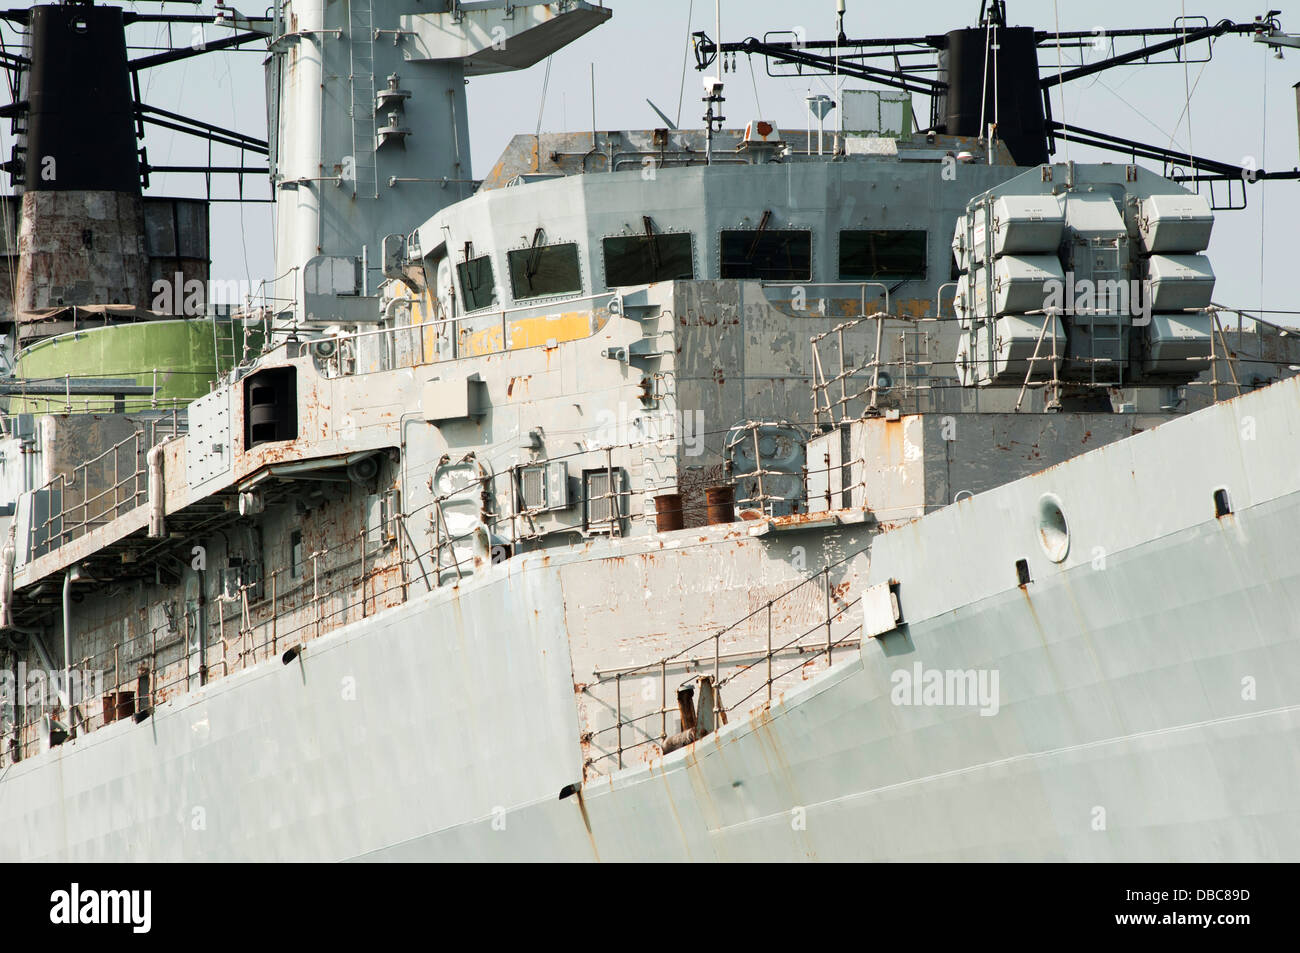 Royal Navy buque anclado en el puerto de Portsmouth. Retirado Foto de stock